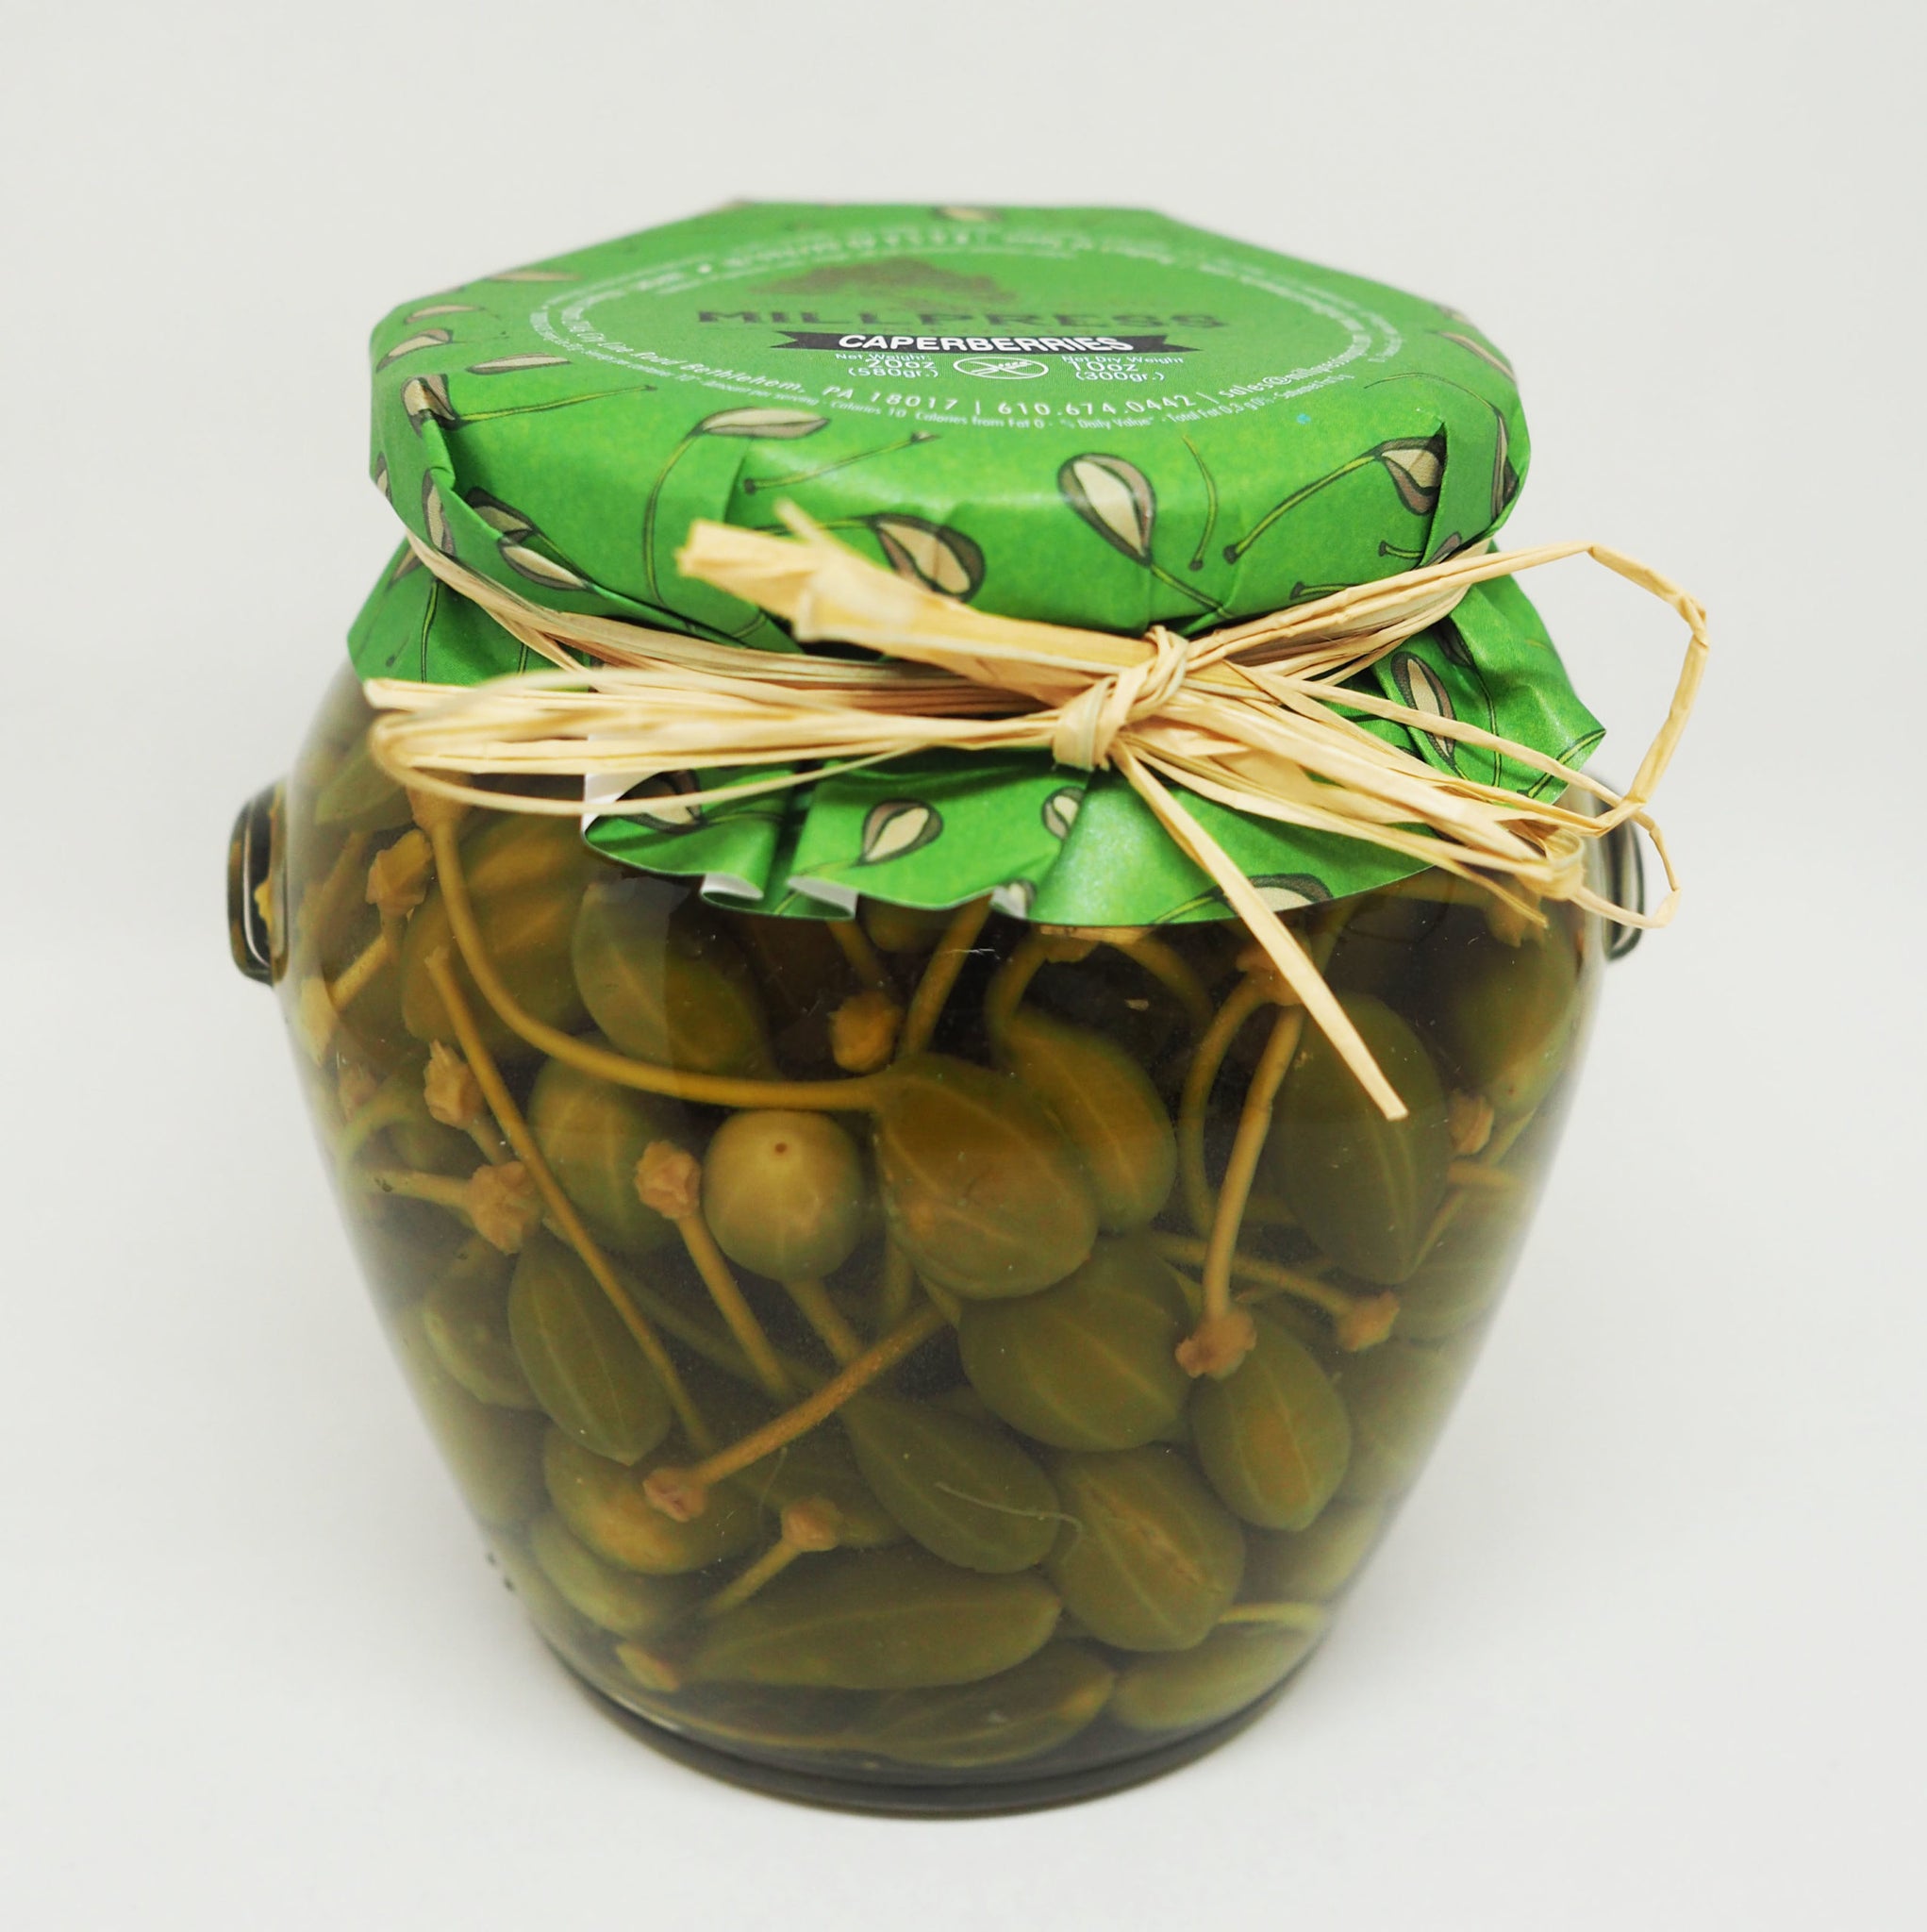 Olives - Caperberries